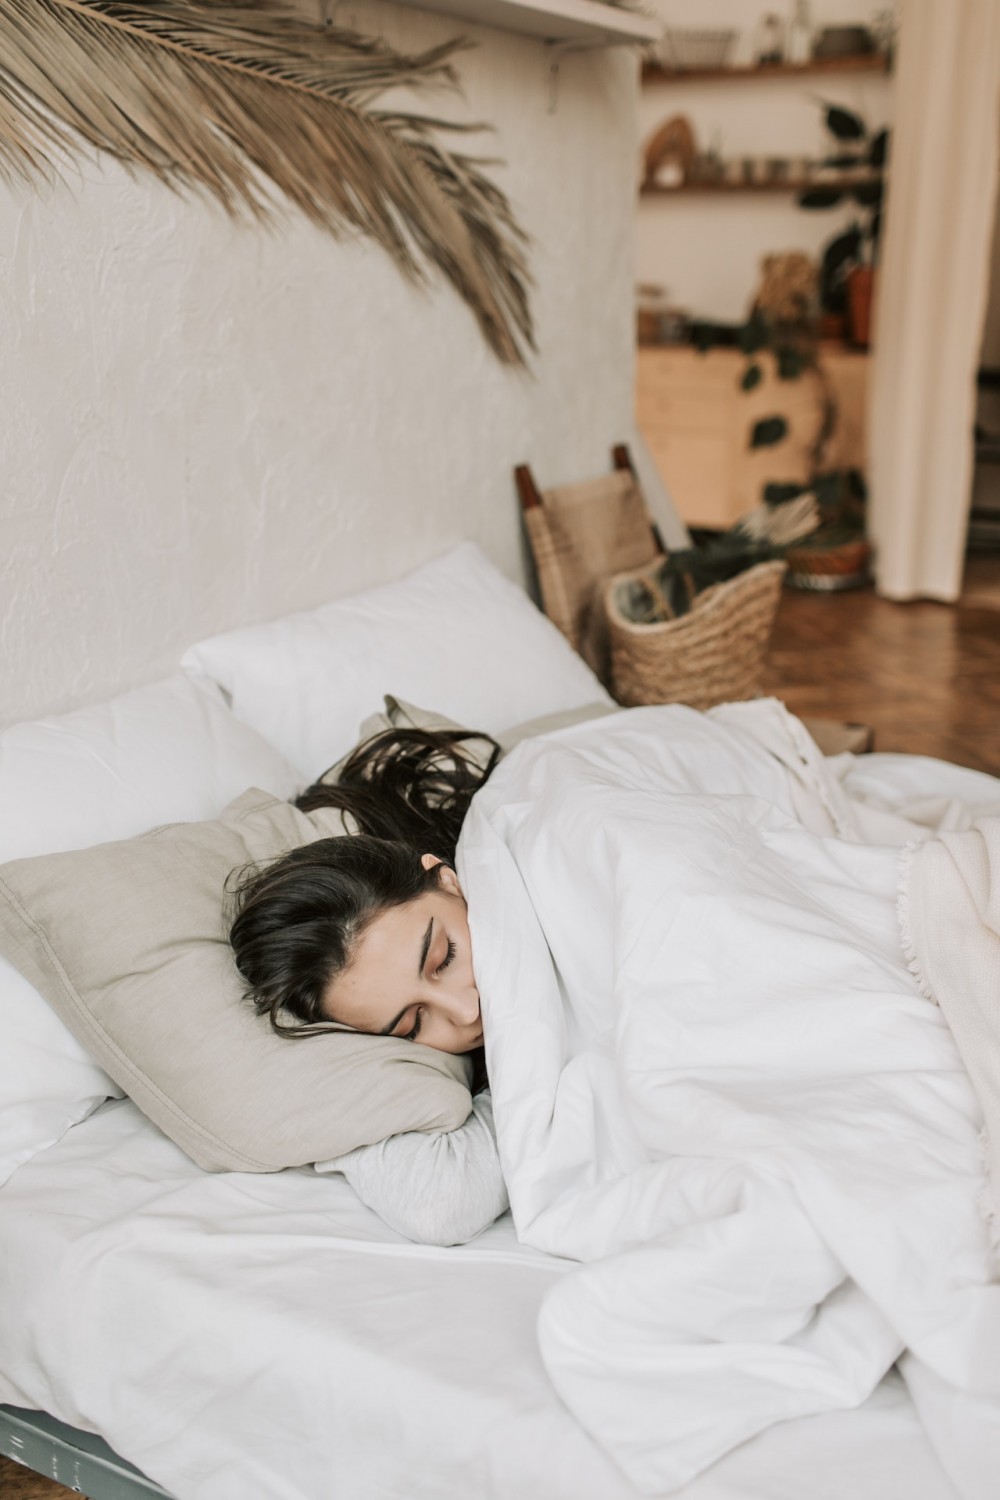 Нестыдный вопрос: нормально ли испытывать оргазм во сне?